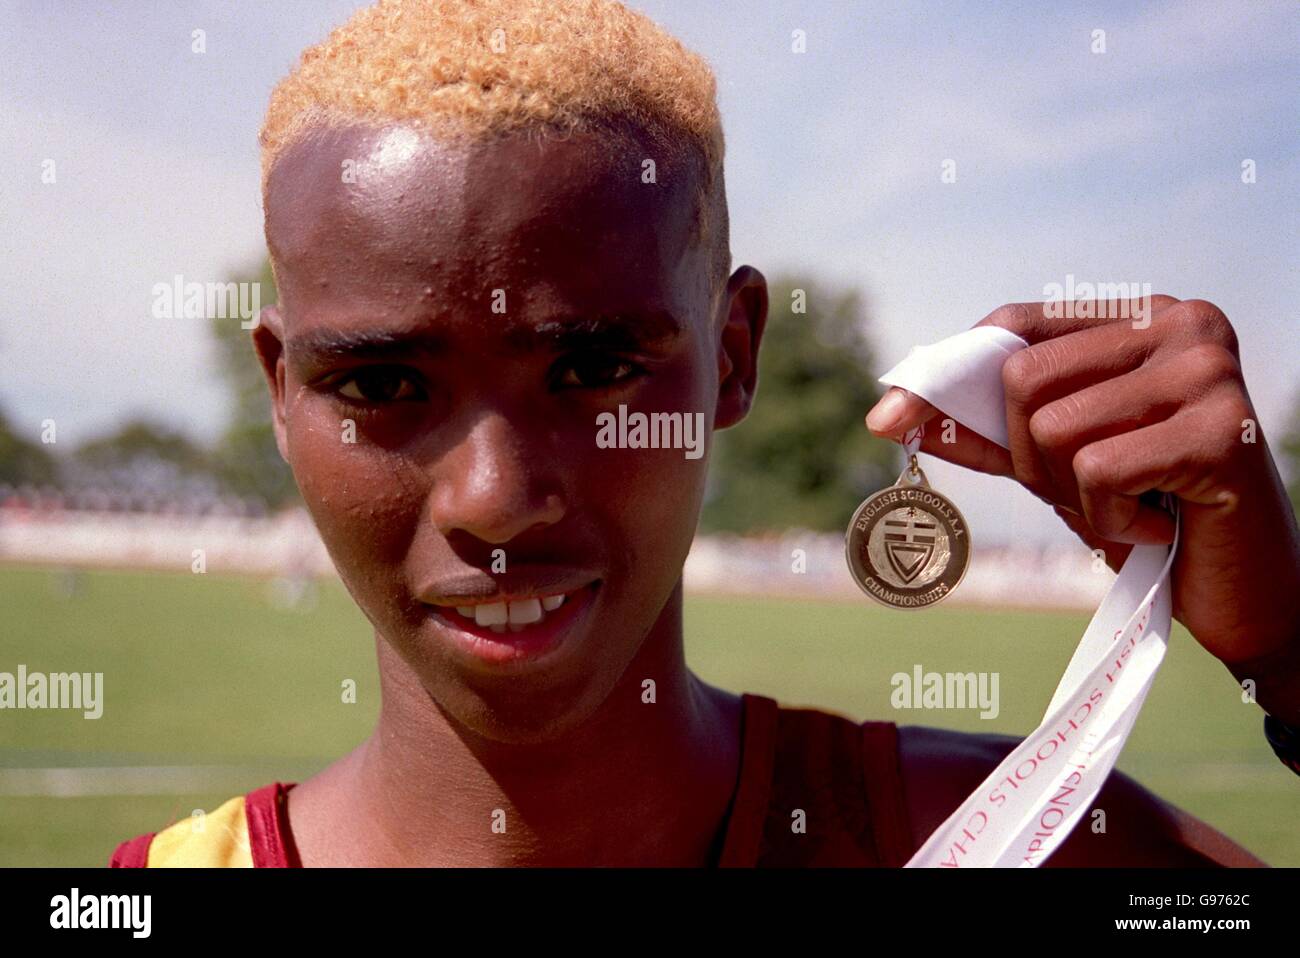 Athlétisme - Championnat des écoles anglaises - Bury St Edmunds.Mohamed Farah, 16 ans, de Hamworth, Middlesex, avec sa médaille d'or pour le 1500m des intermédiaires Banque D'Images